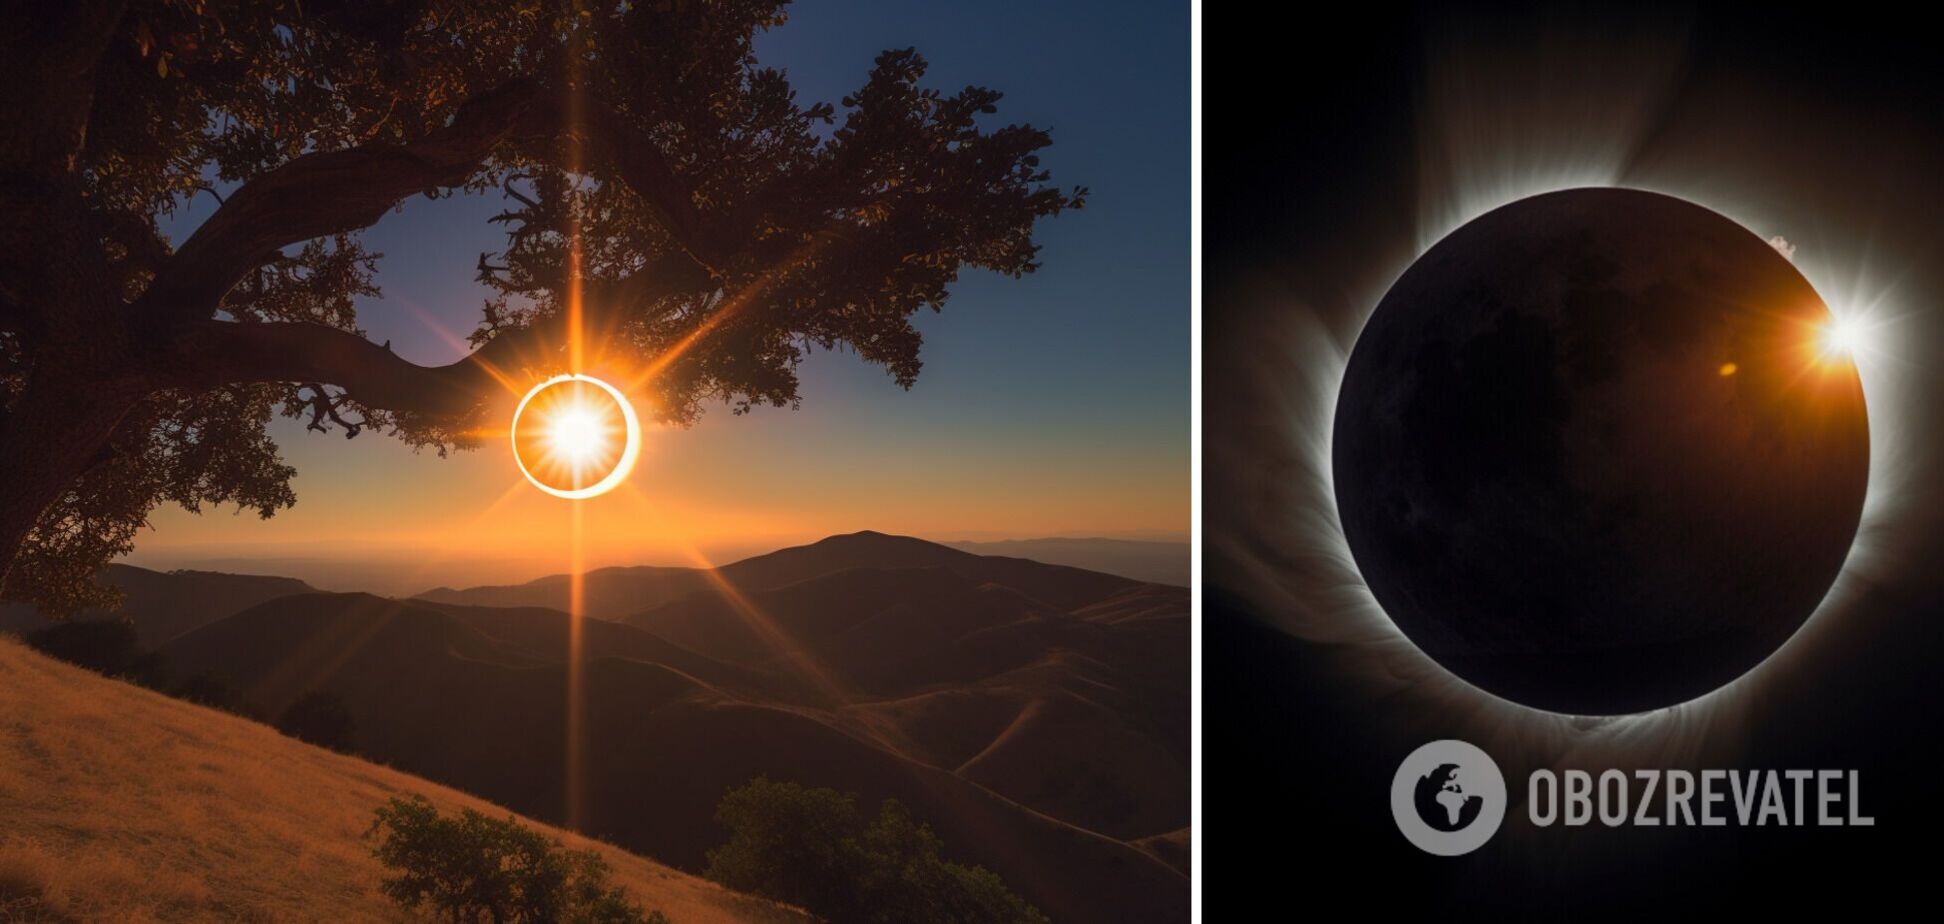 Сонячне затемнення 20 квітня: коли і де можна побачити. Онлайн-трансляція